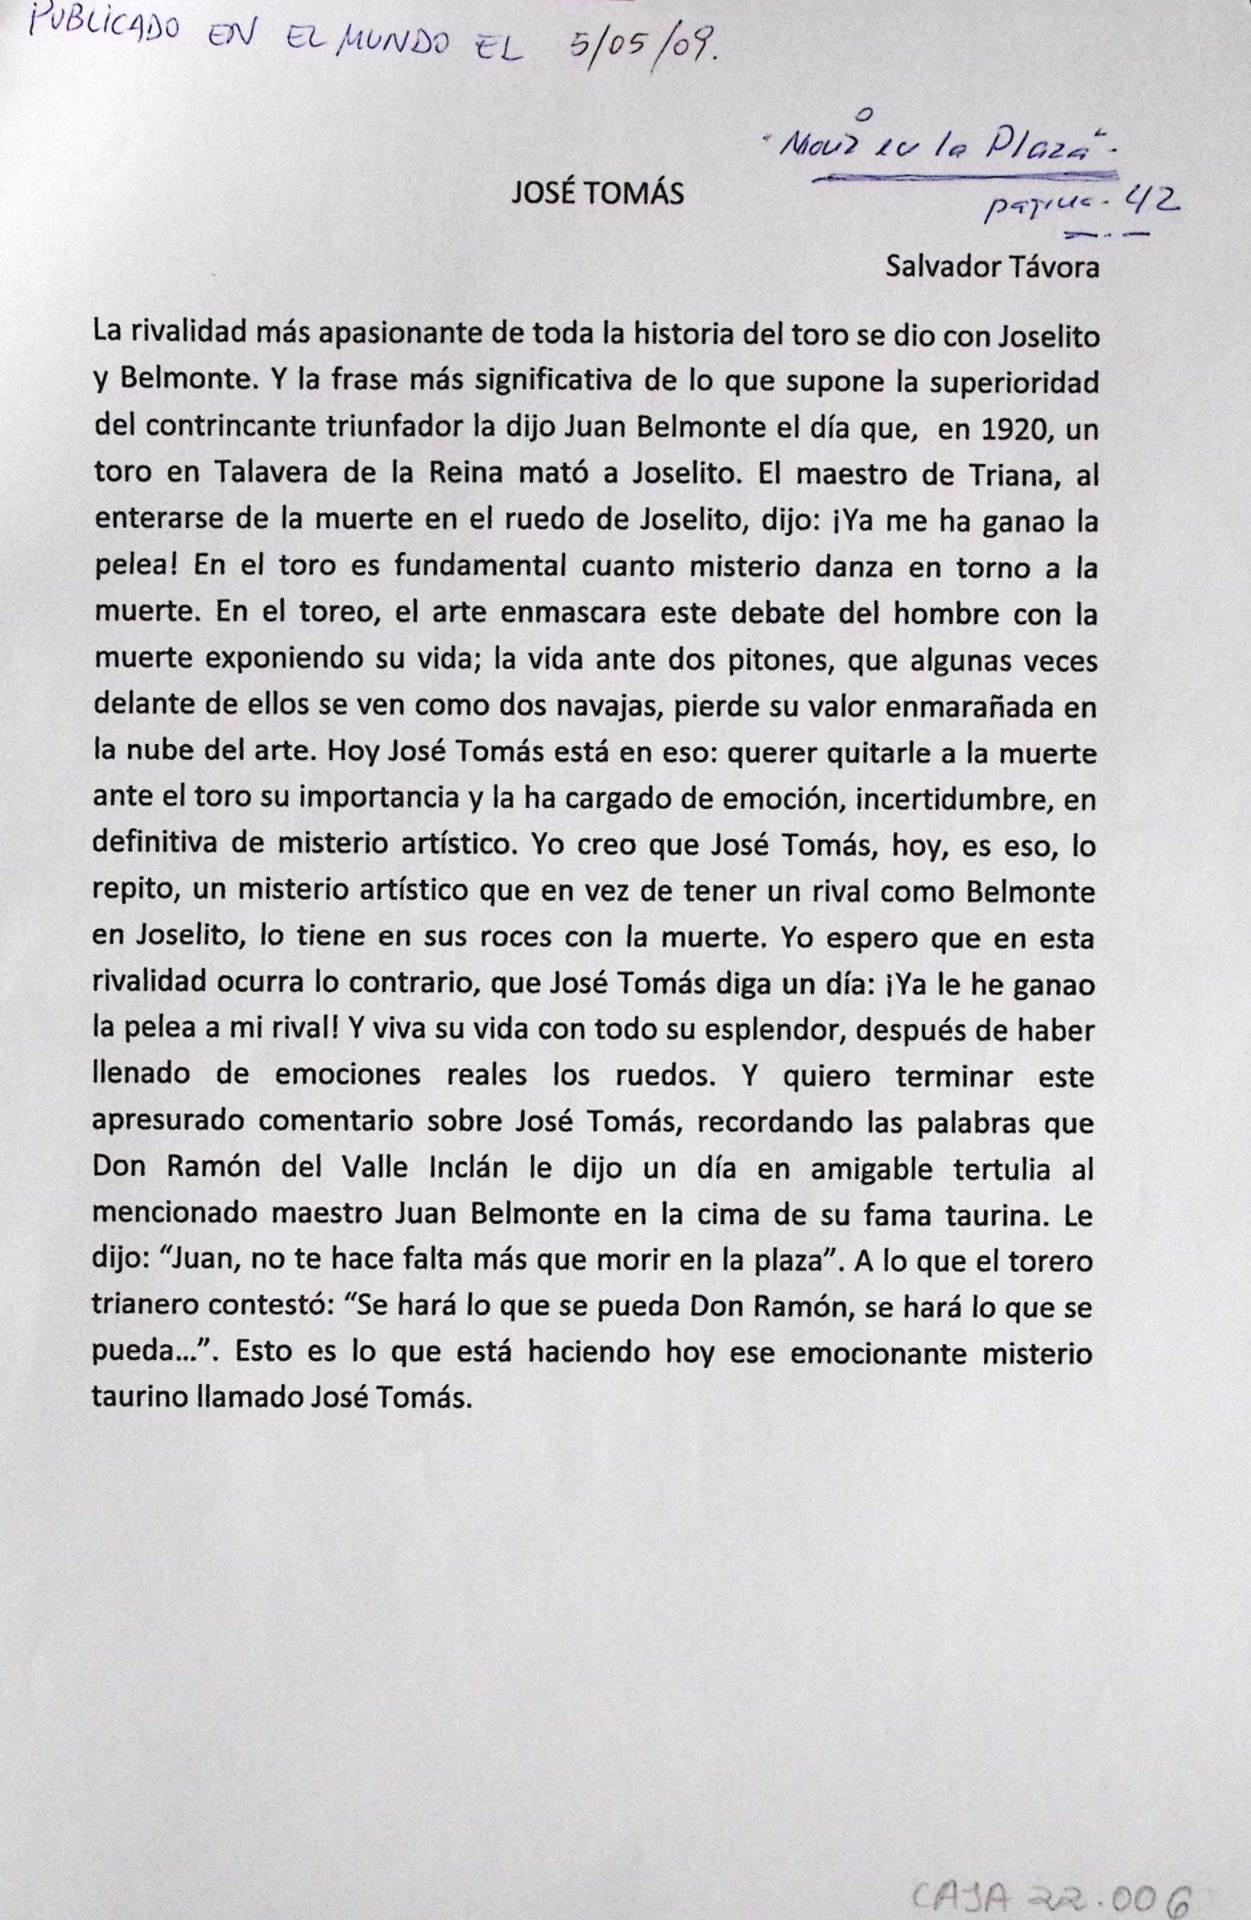 José Tomás, "Morir en la Plaza"